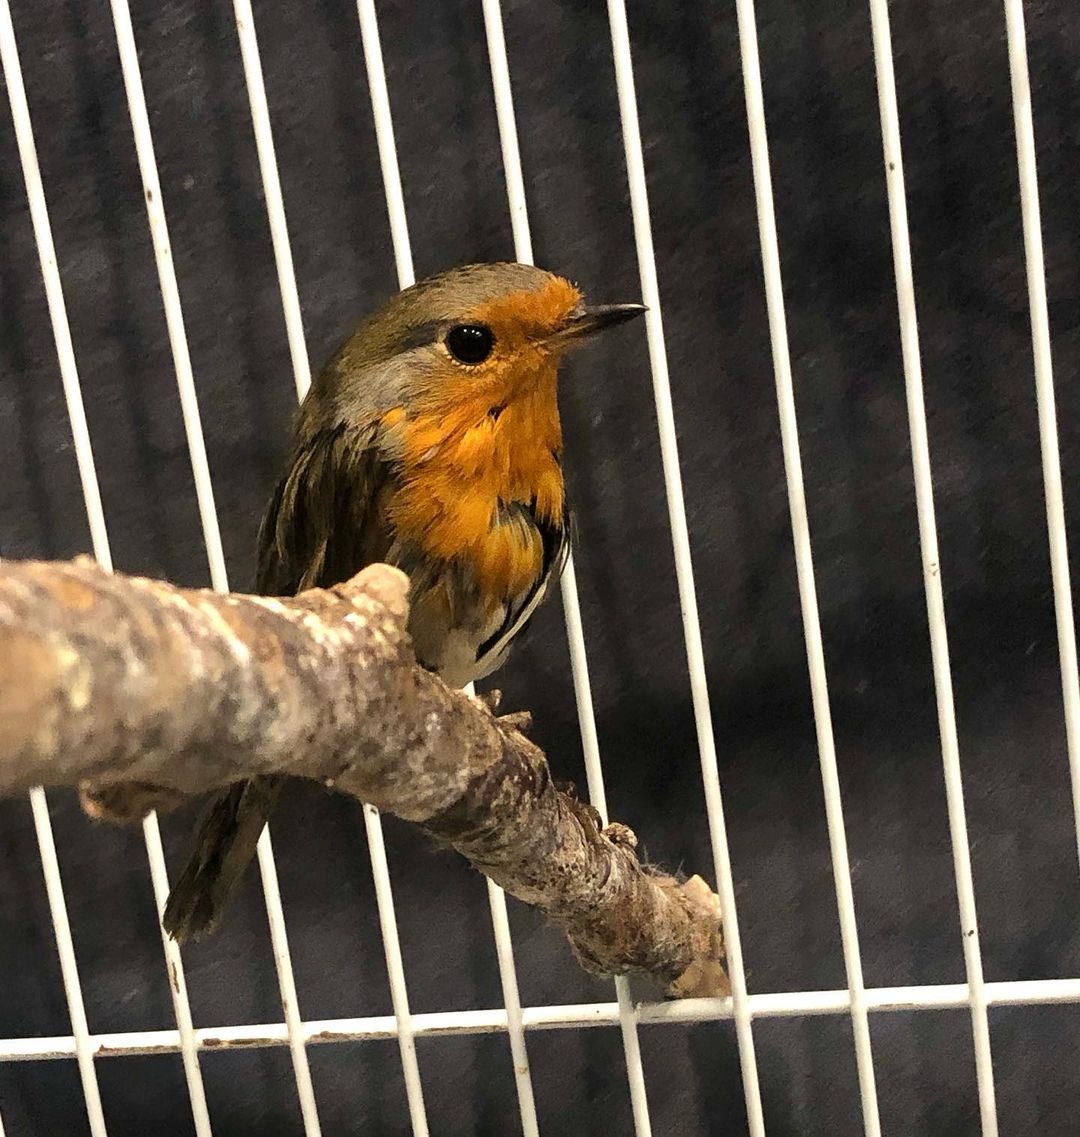 Petite cage pour oiseaux rouge de Prevue Pet 